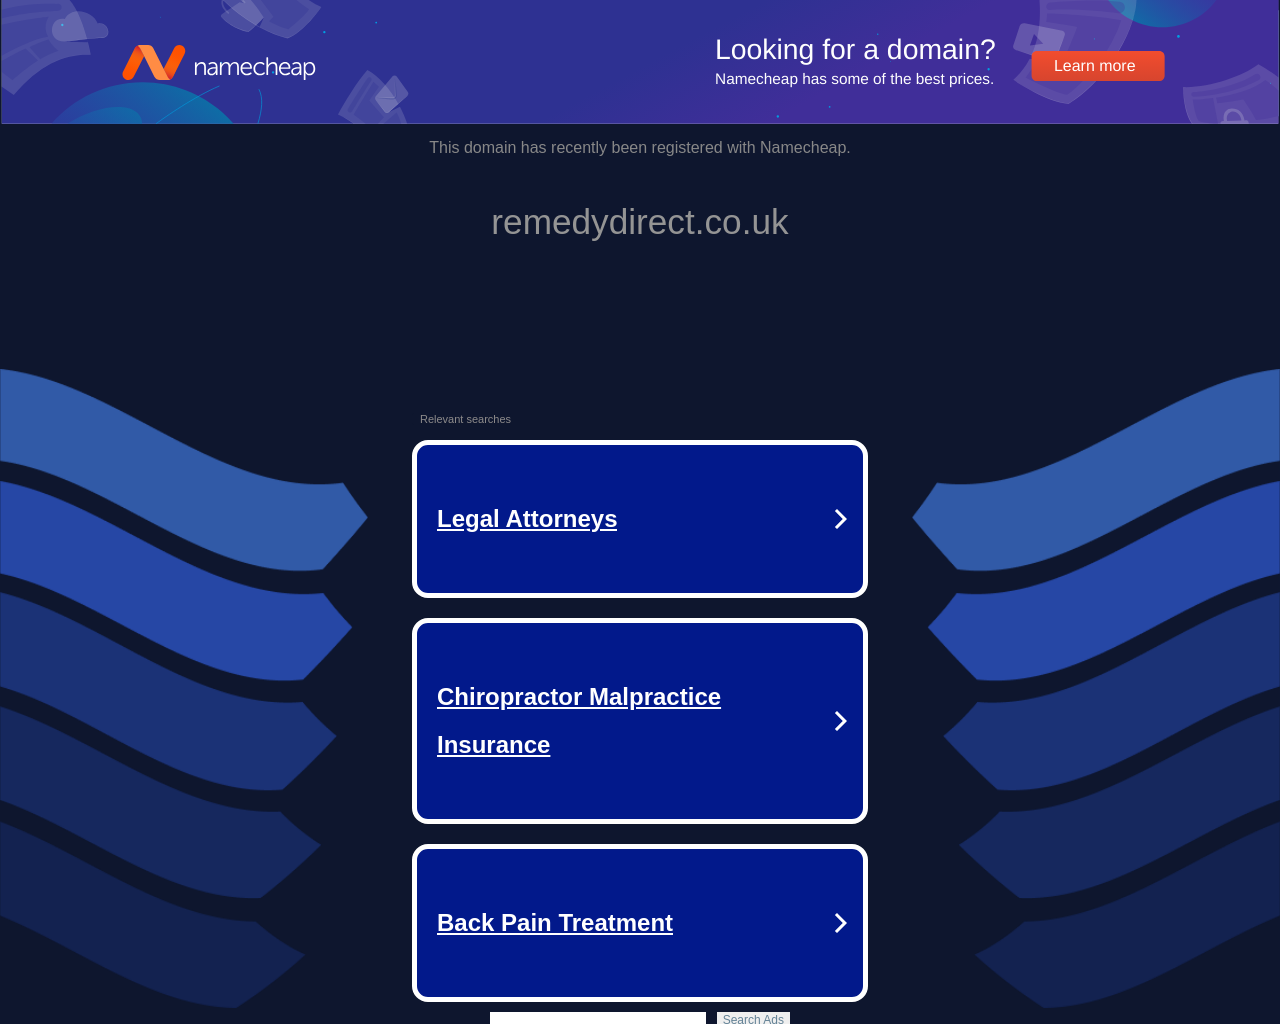 remedydirect.co.uk